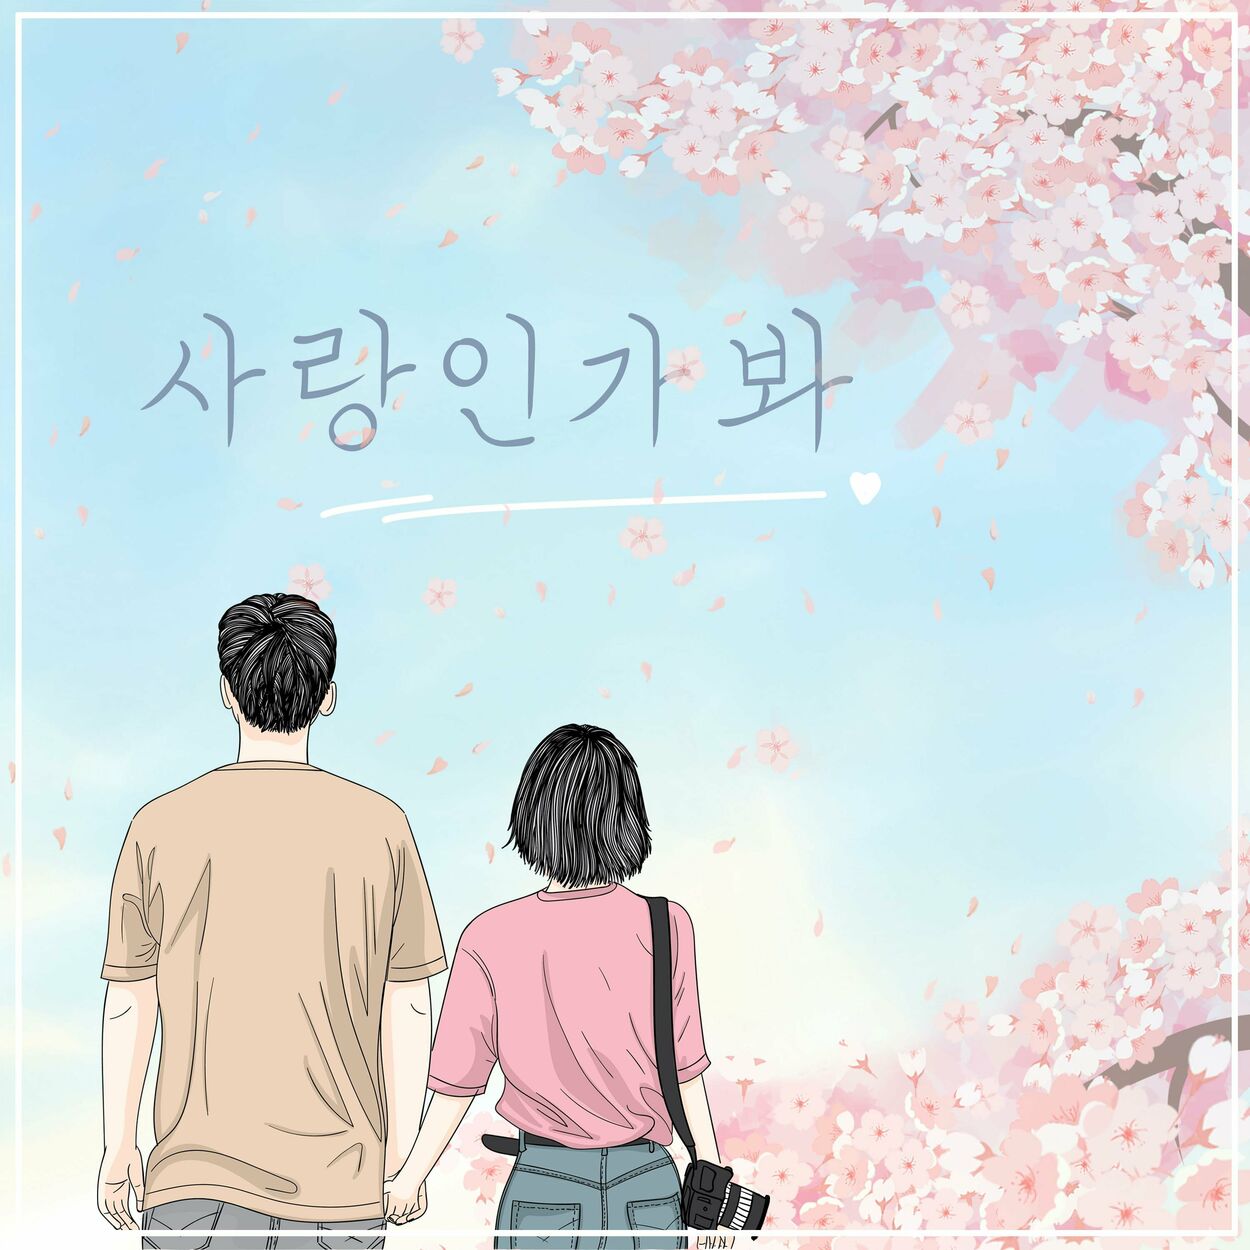 Yeon Kyoo Seong – Maybe love – Single